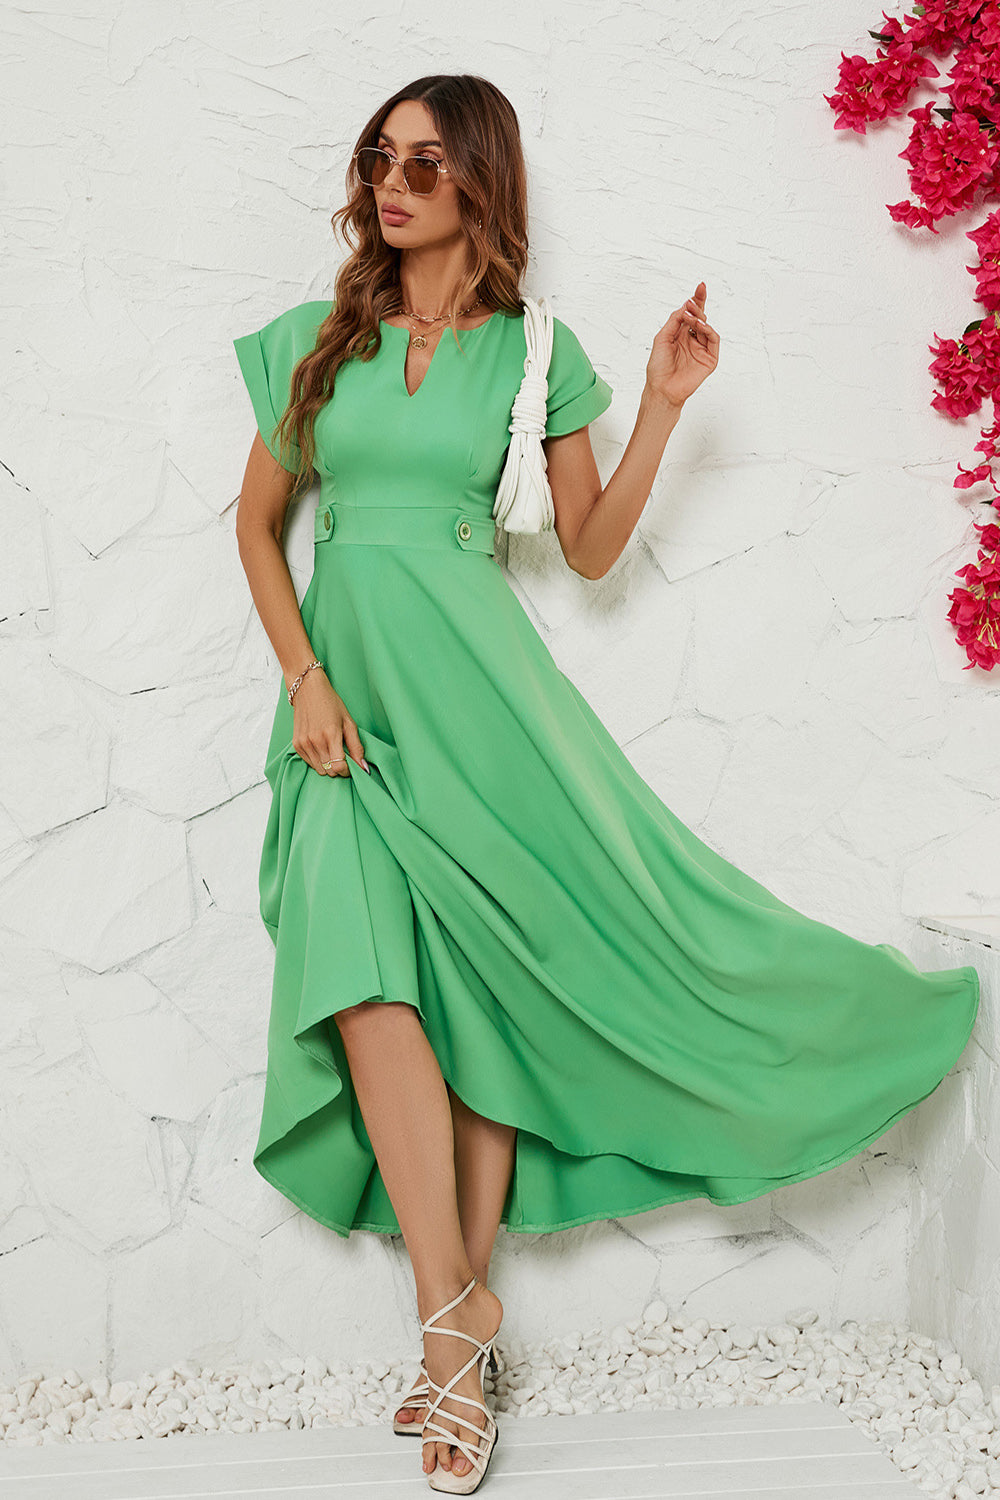 Green Short Sleeves Tea Length Summer Dress